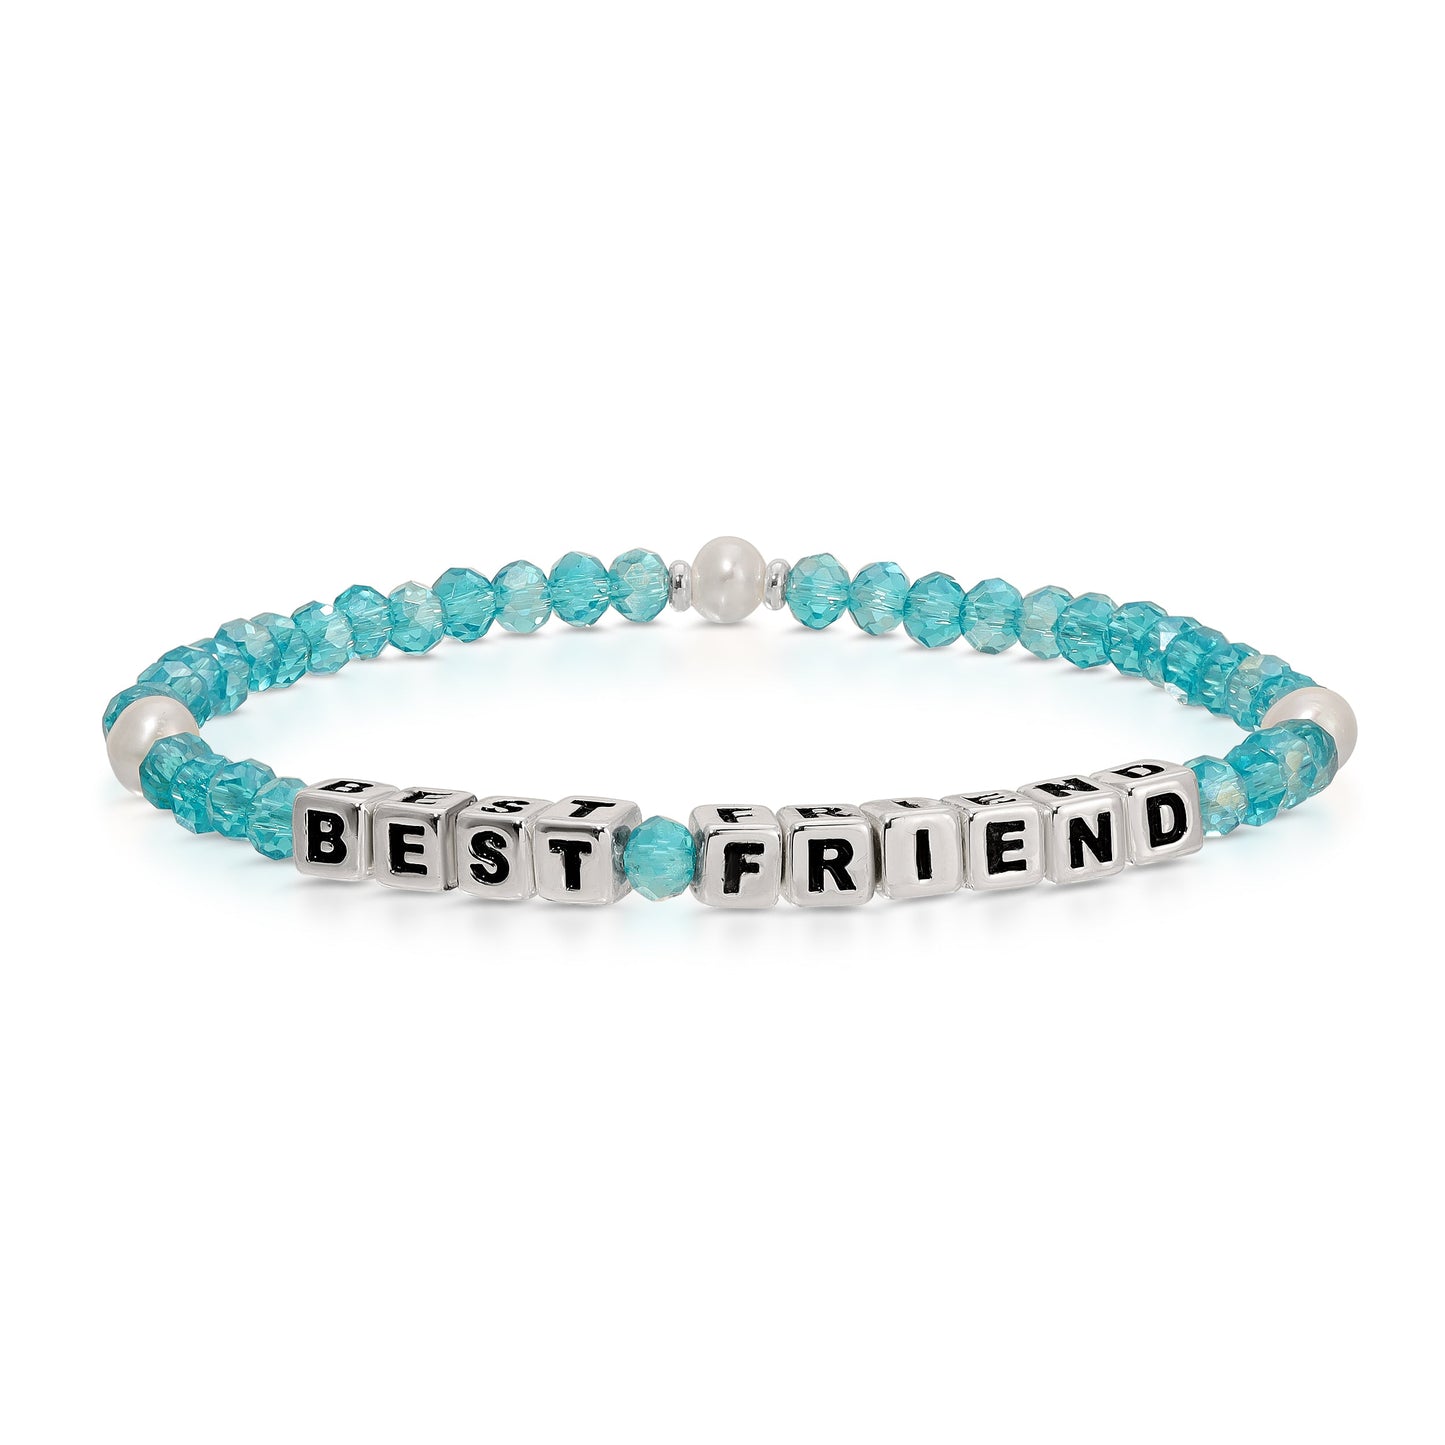 BEST FRIEND Colorful Words Bracelet